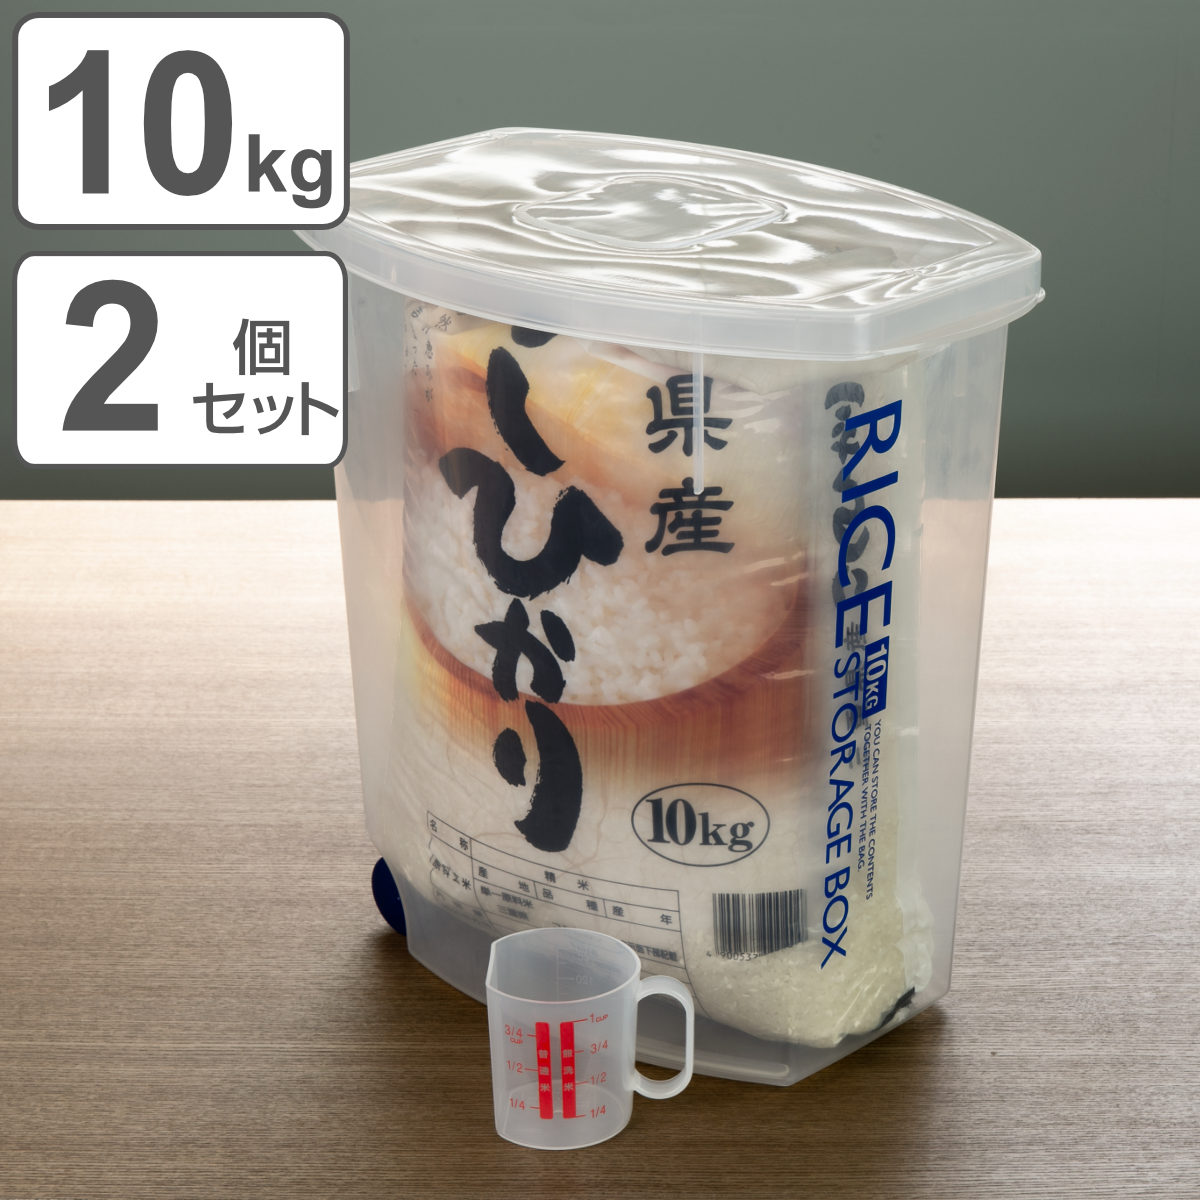 保障できる米びつ 袋のまんま防虫米びつ 10kg 防虫剤付き （ ） こめびつ ライスボックス 米櫃 2個セット 計量カップ付 おすすめ  保存容器、ケース